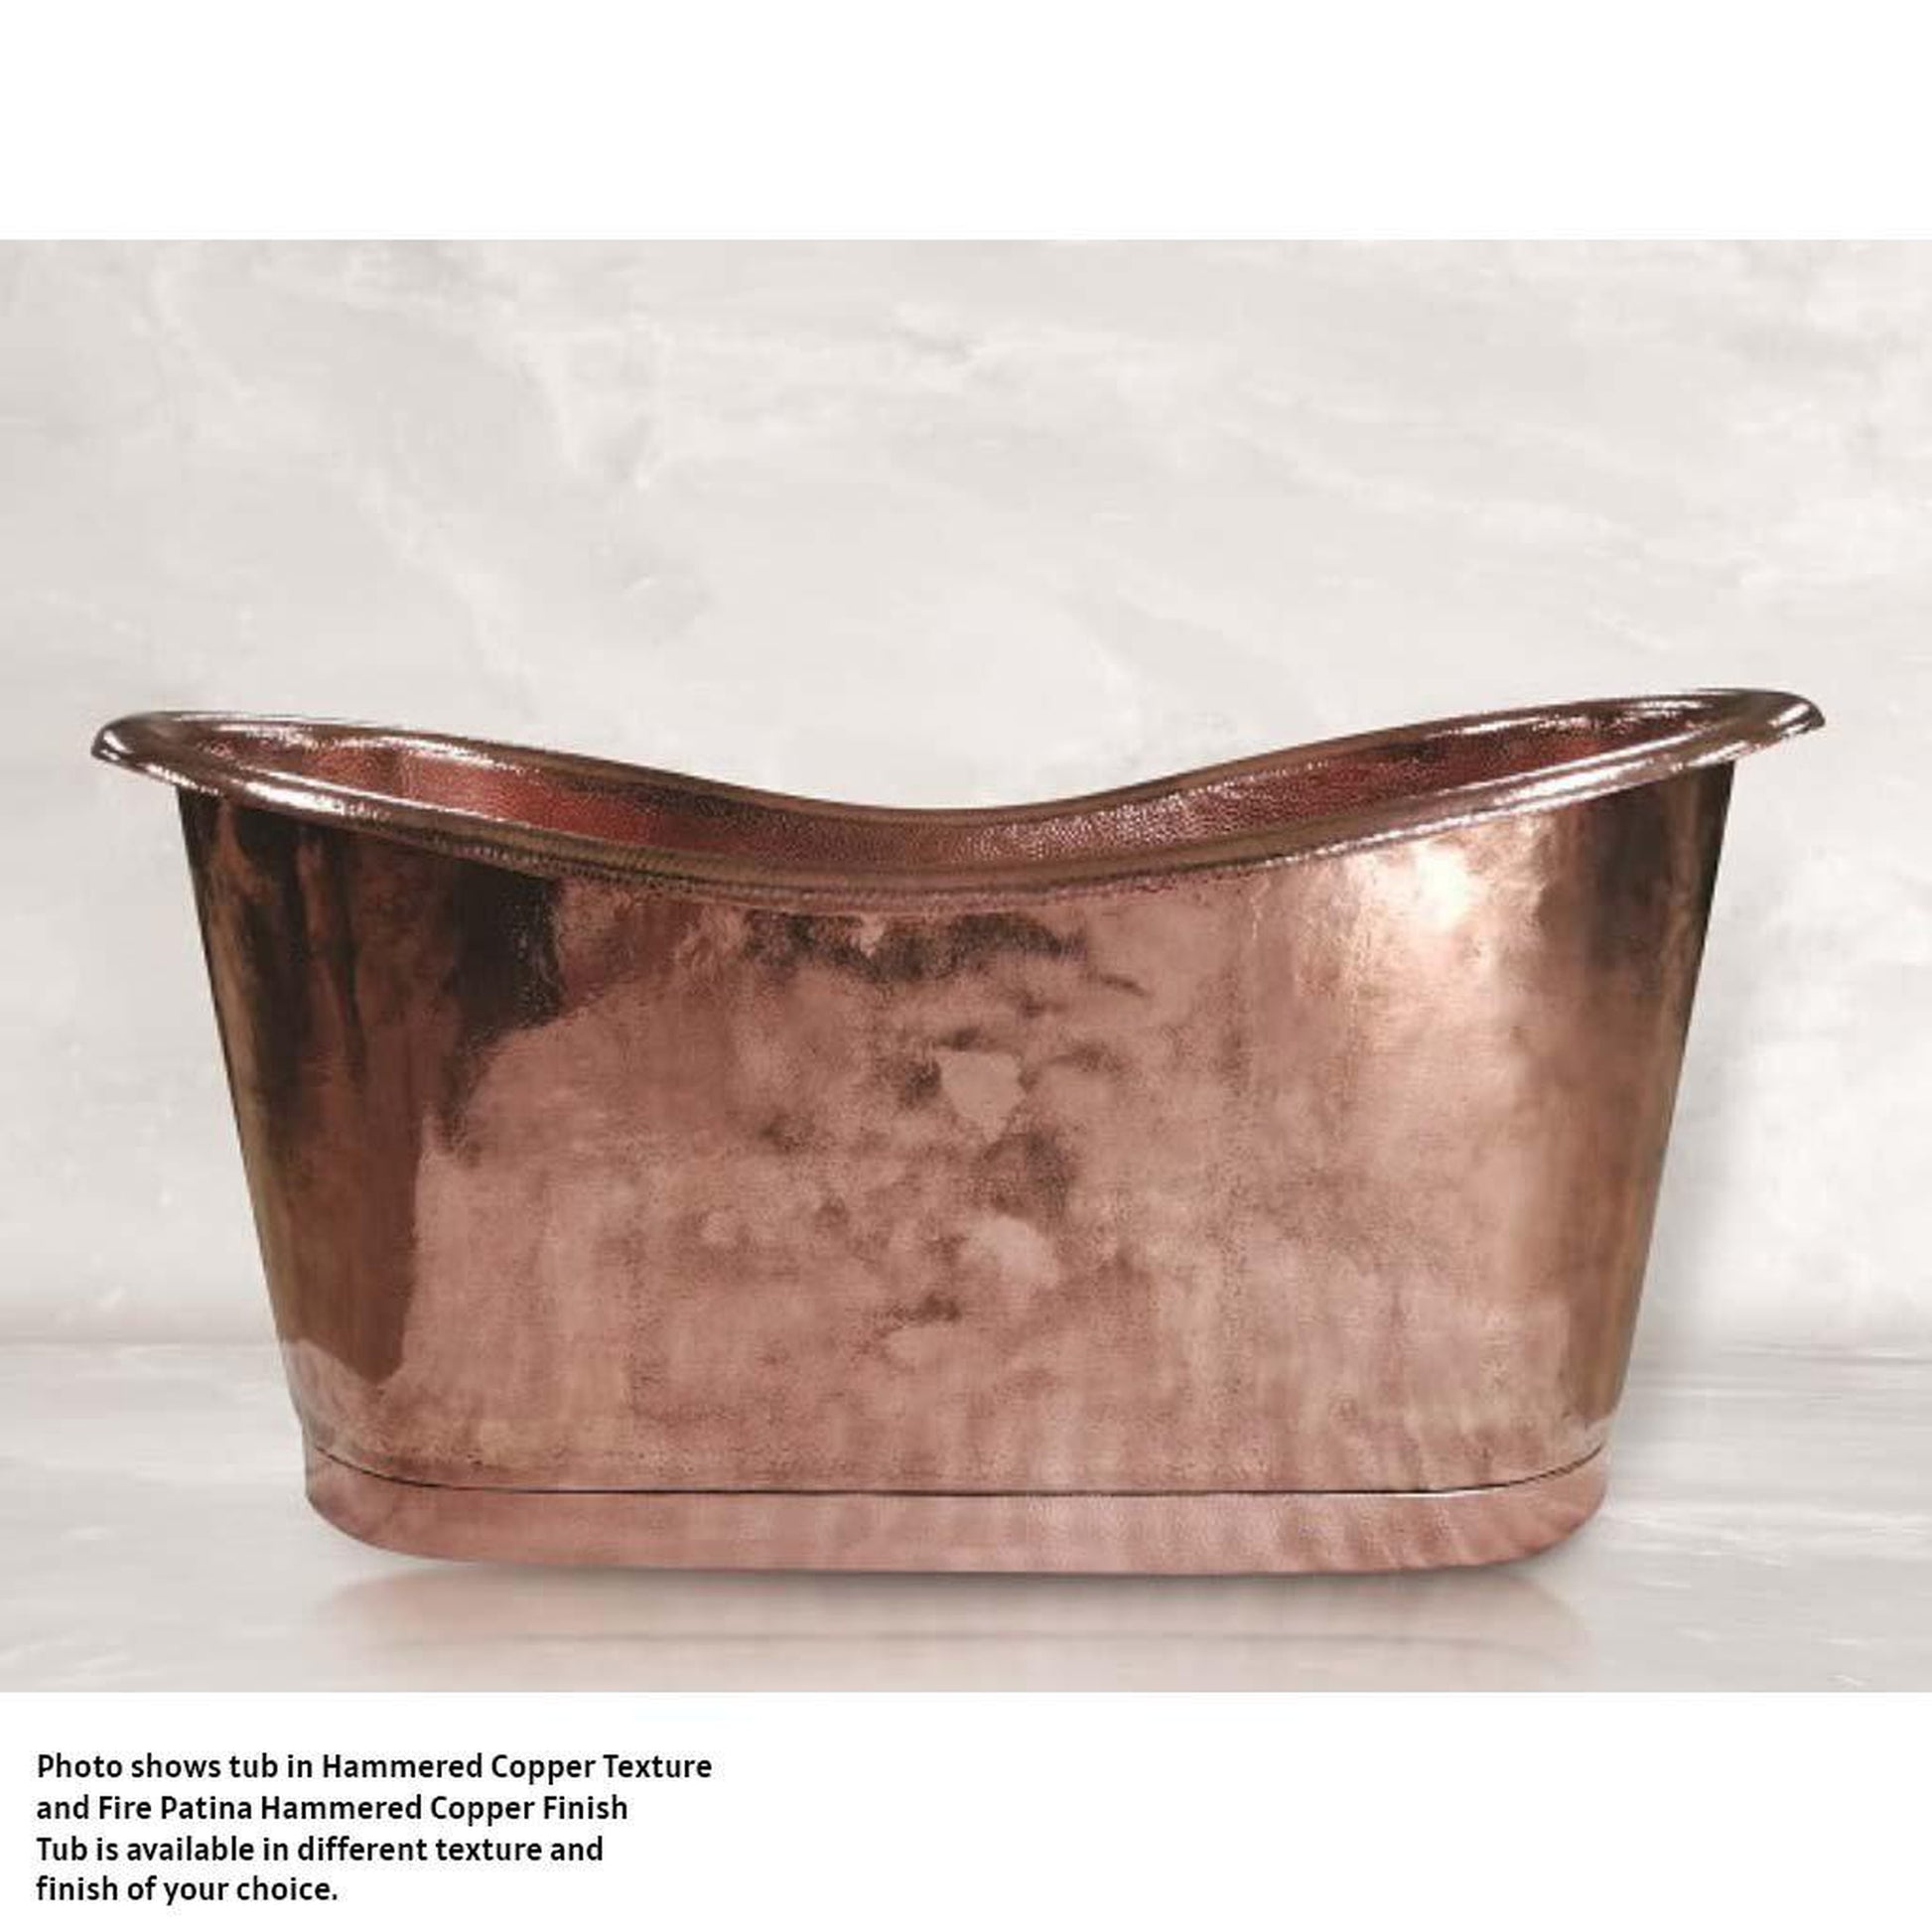 Amoretti Brothers Regina 60" Freestanding Soaking Copper Tub in Copper Finish